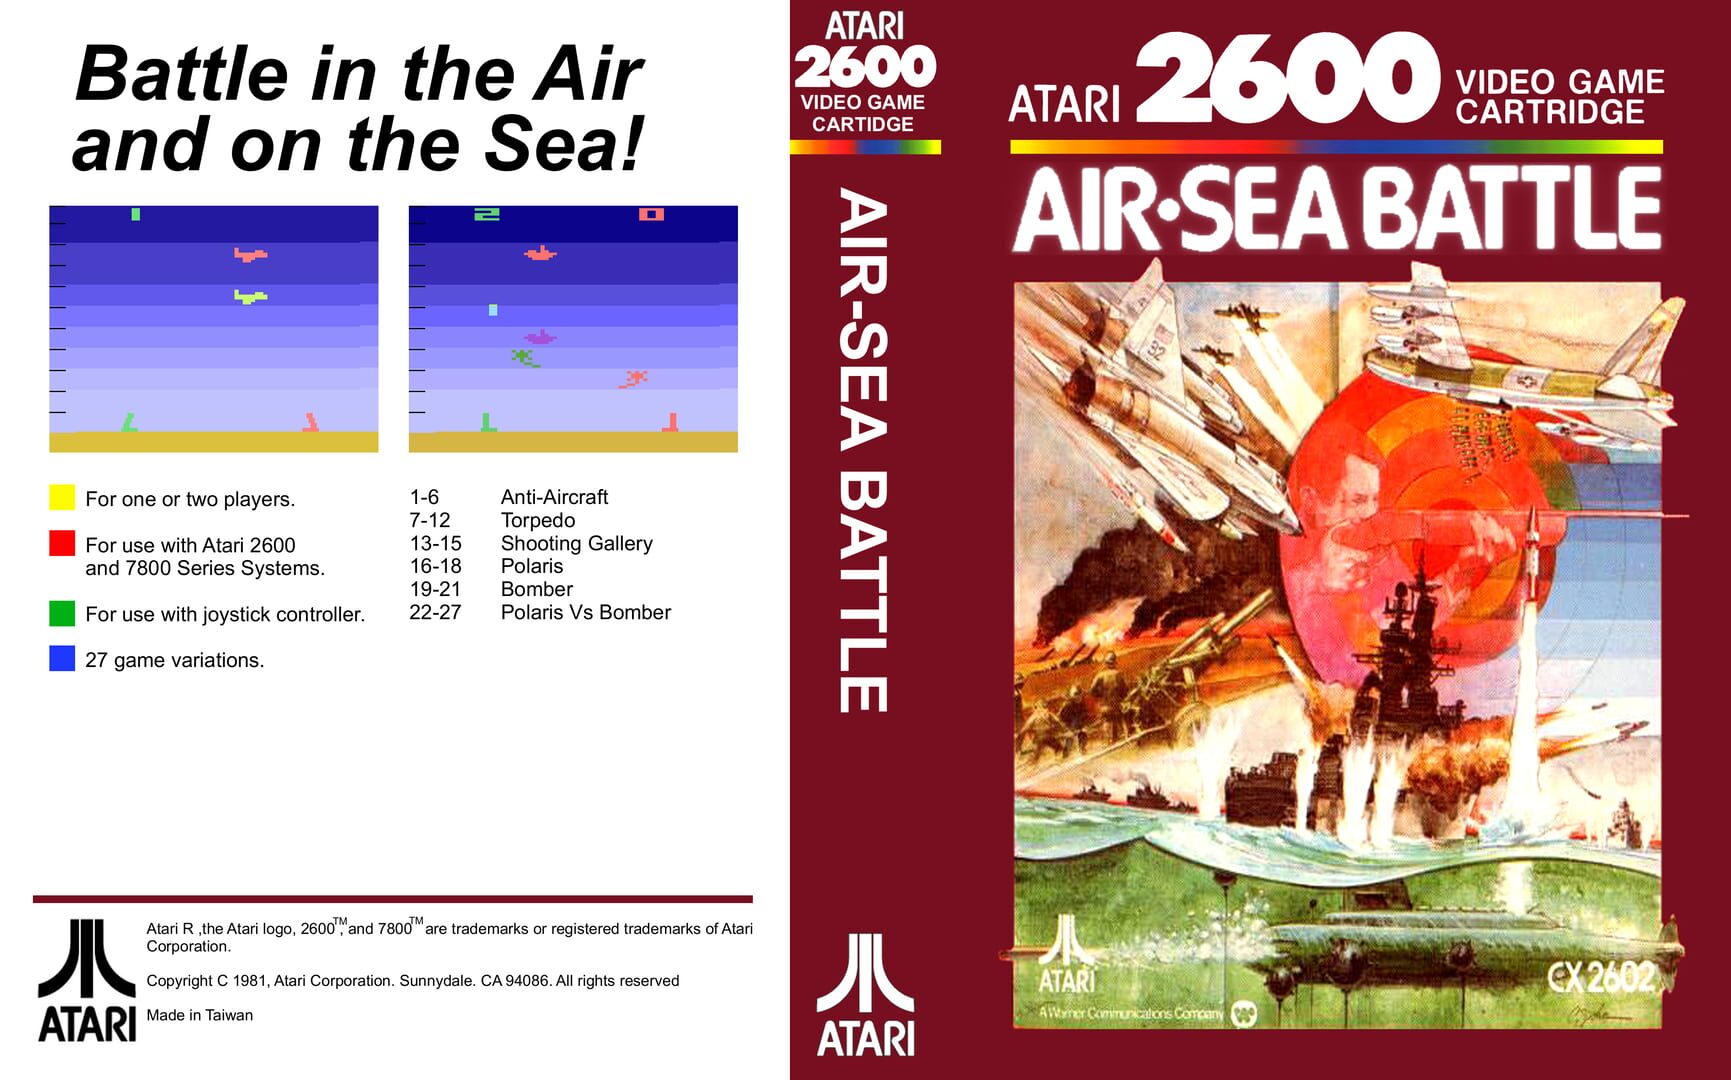 Arte - Air-Sea Battle